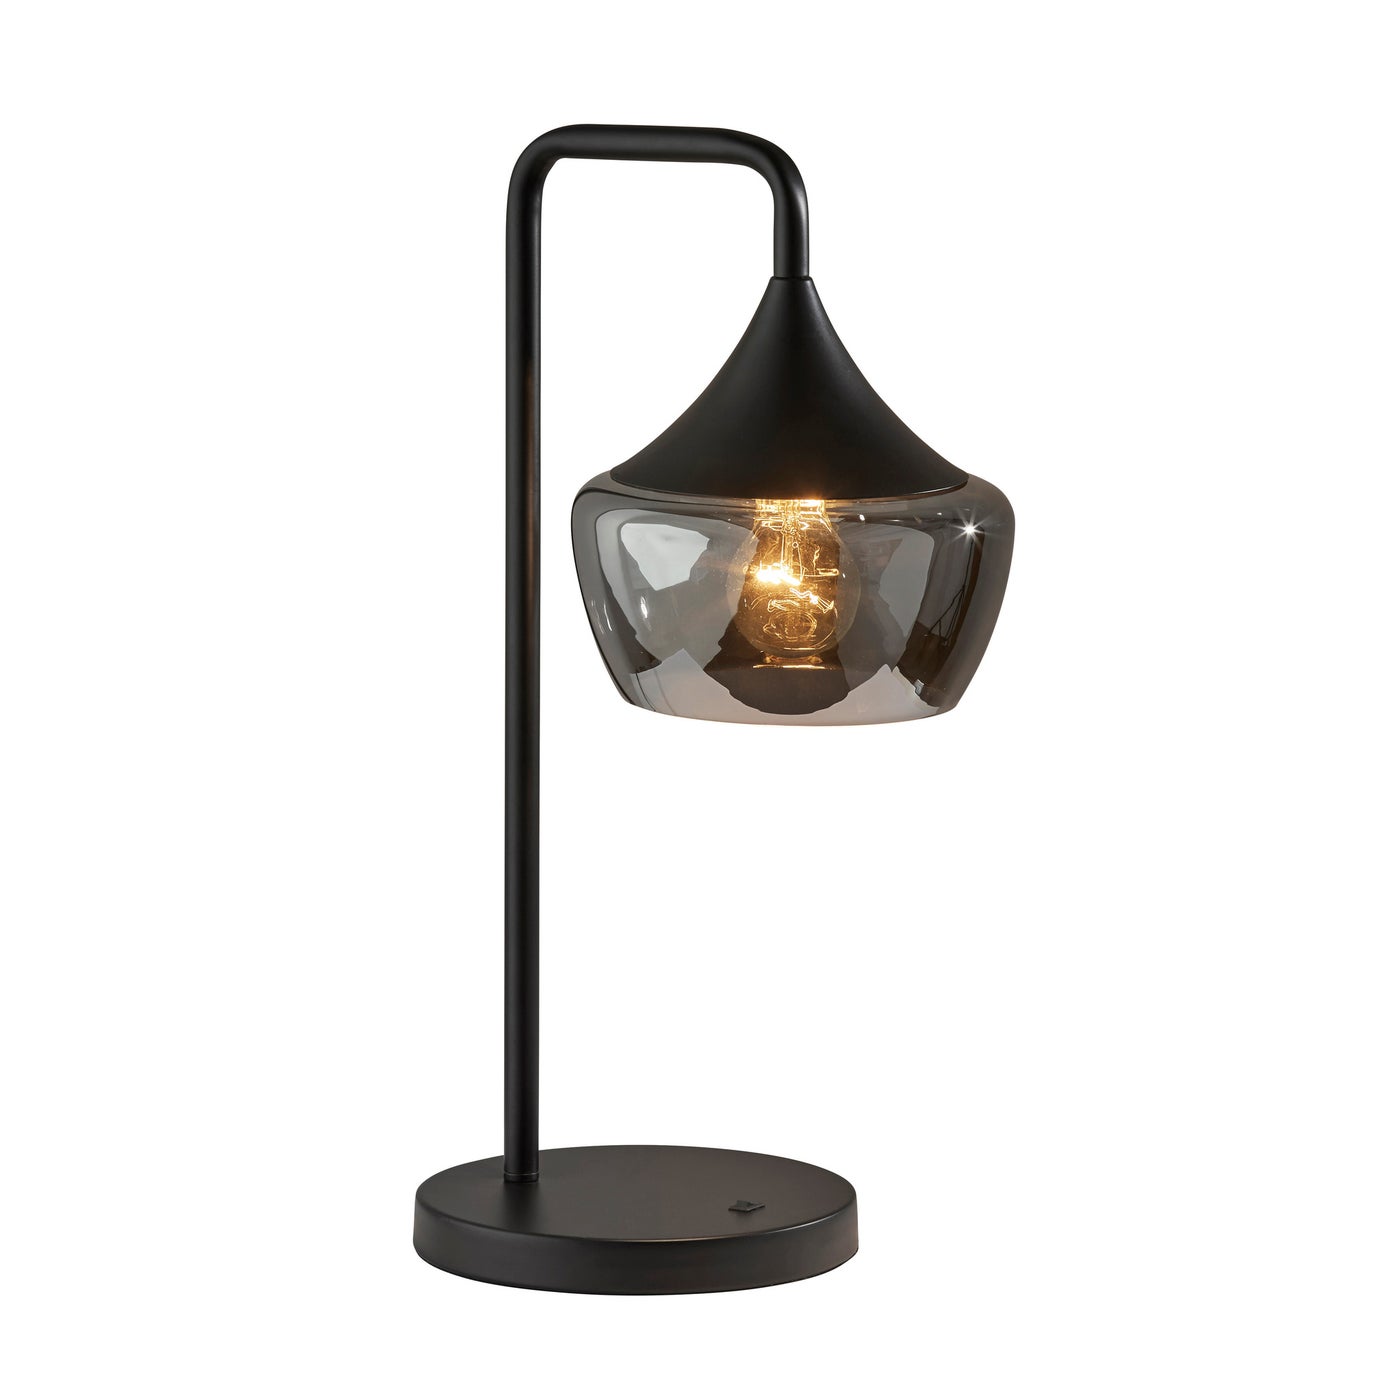 Adesso Home - 2142-01 - Table Lamp - Eliza - Black